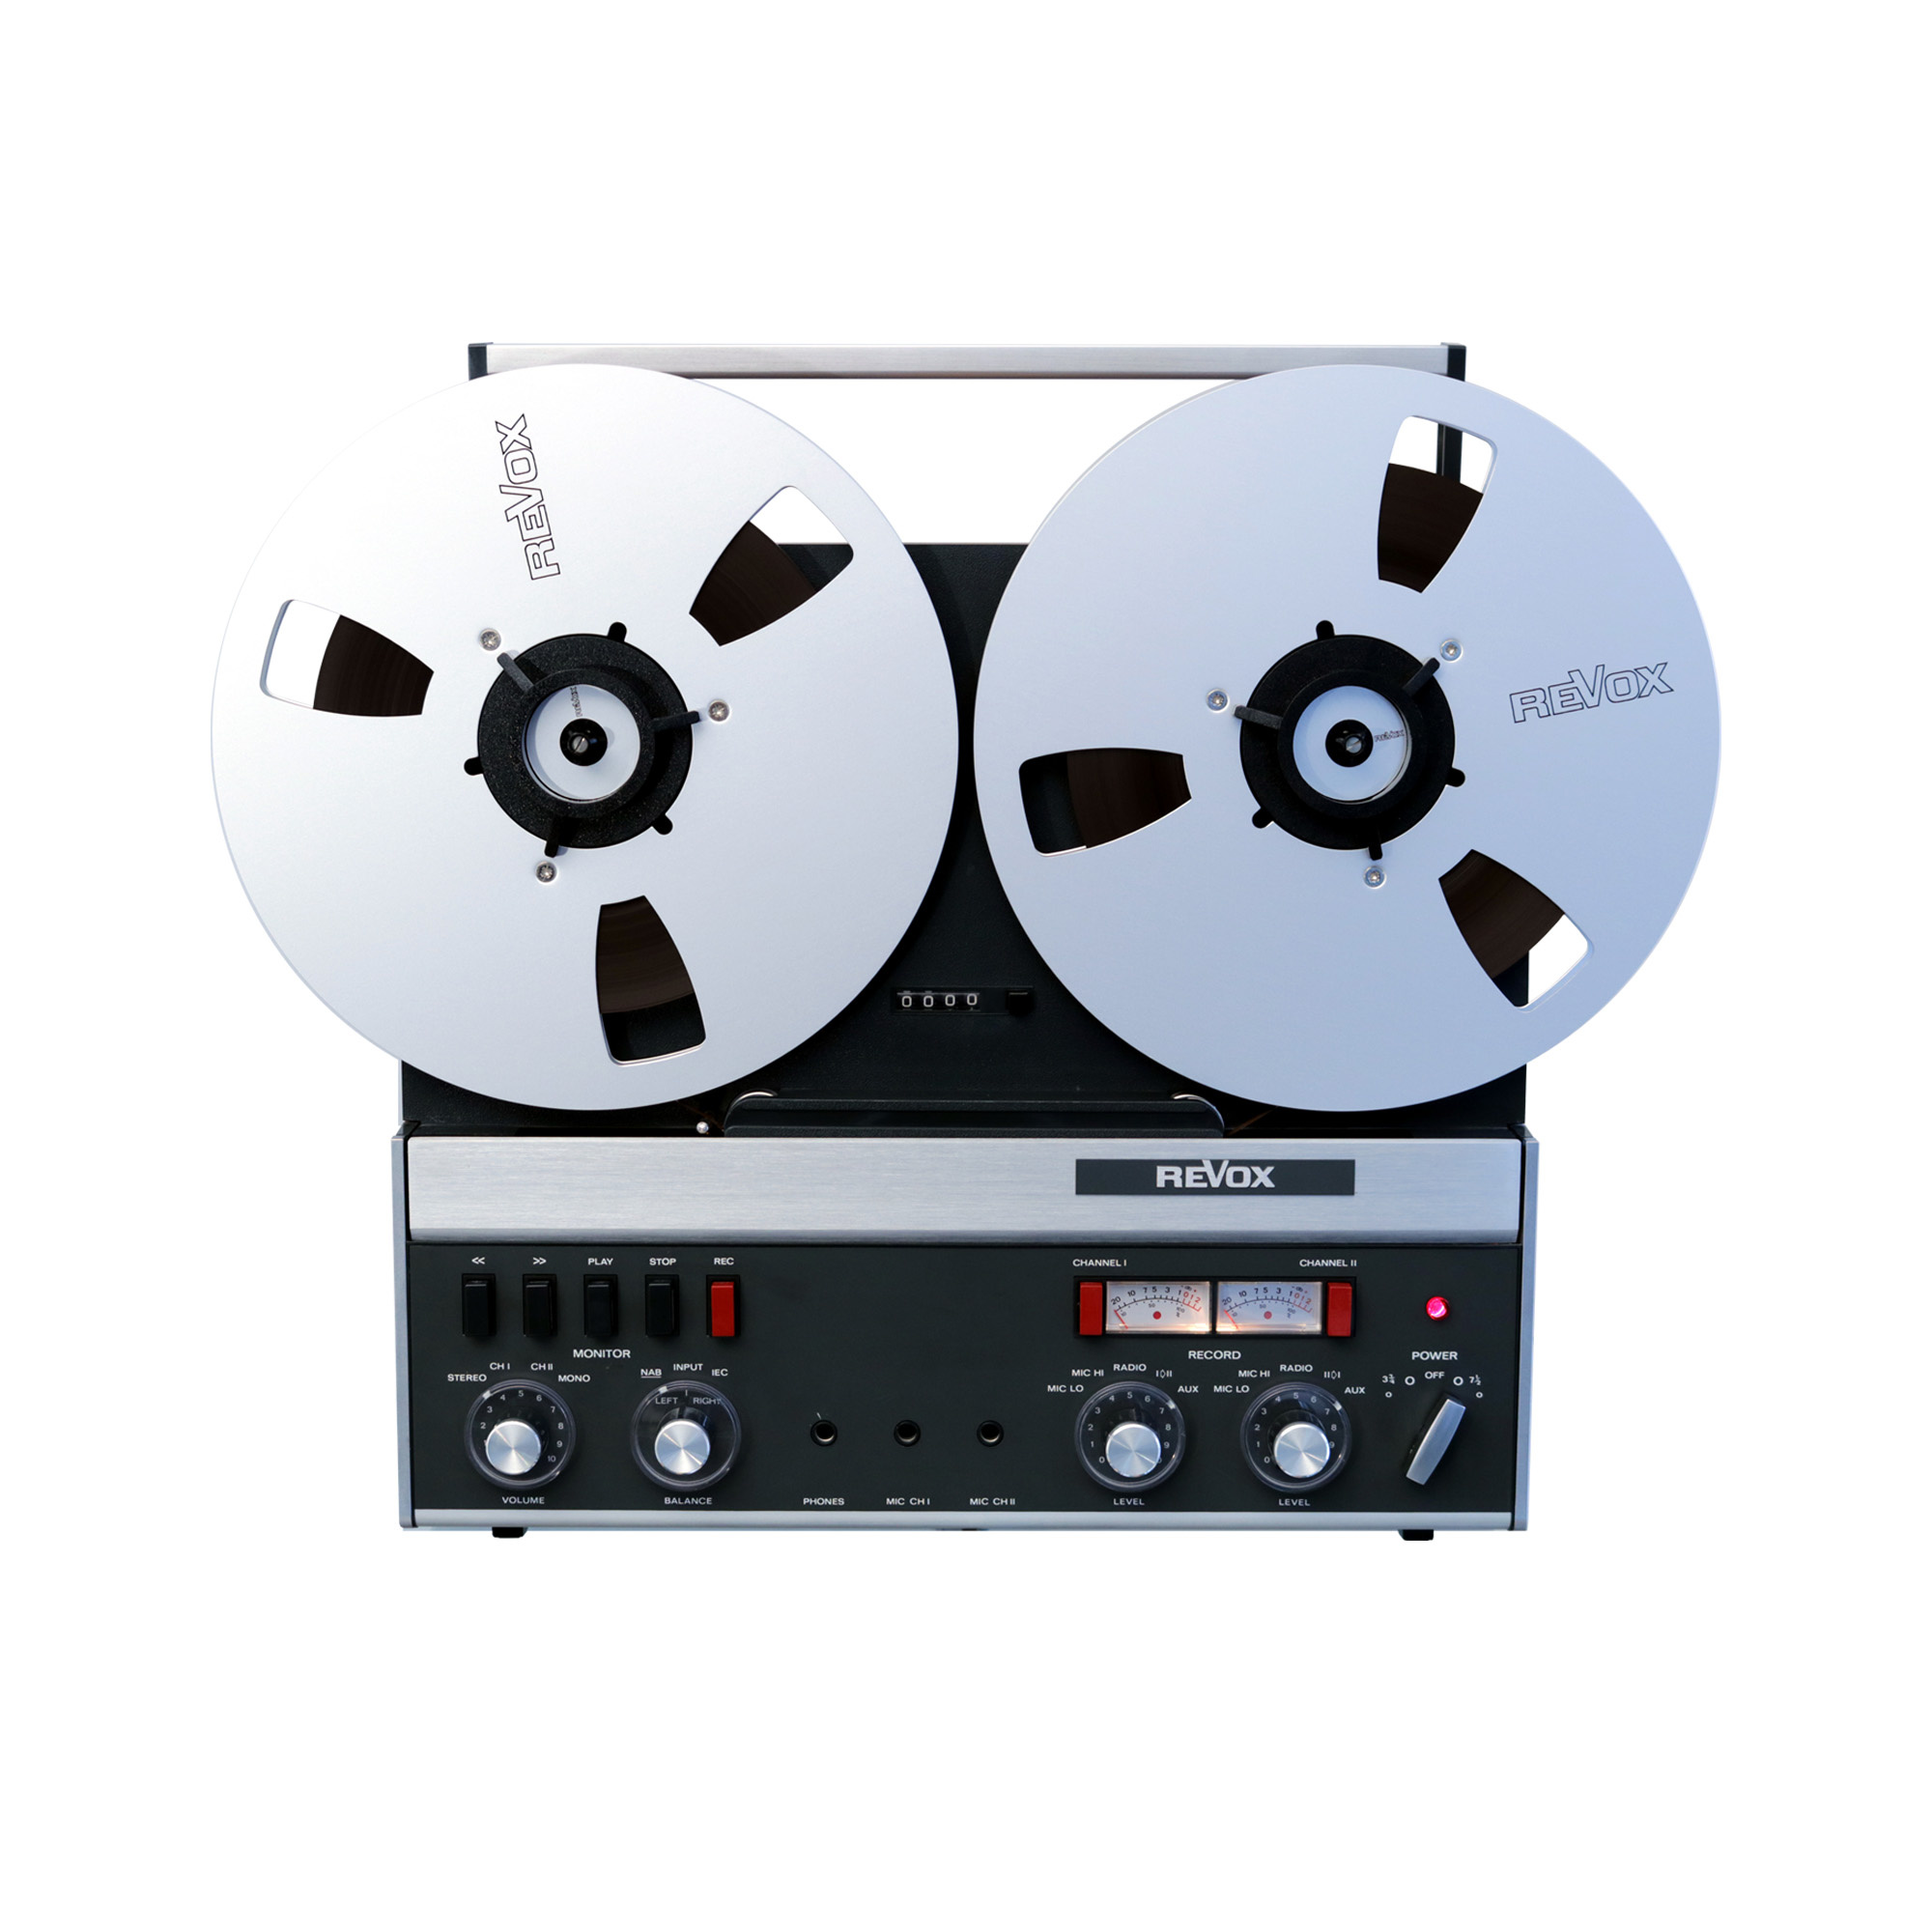 Reel-to-reel tape is the new vinyl